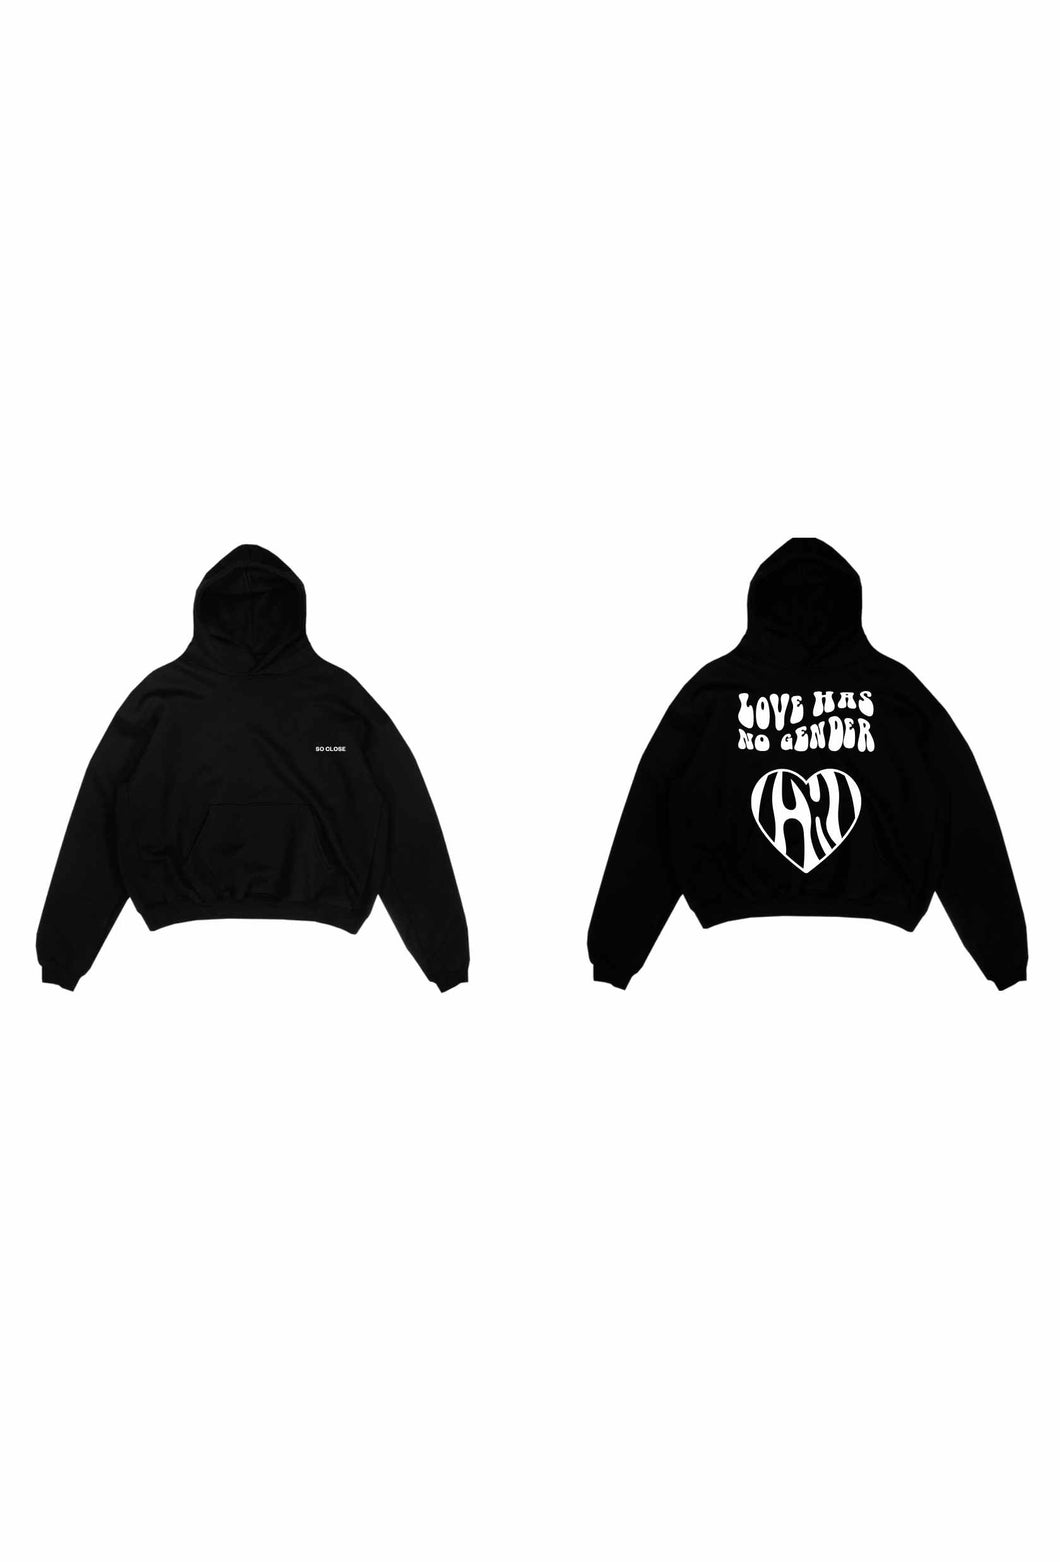 Heavyweight Black hoodie - 